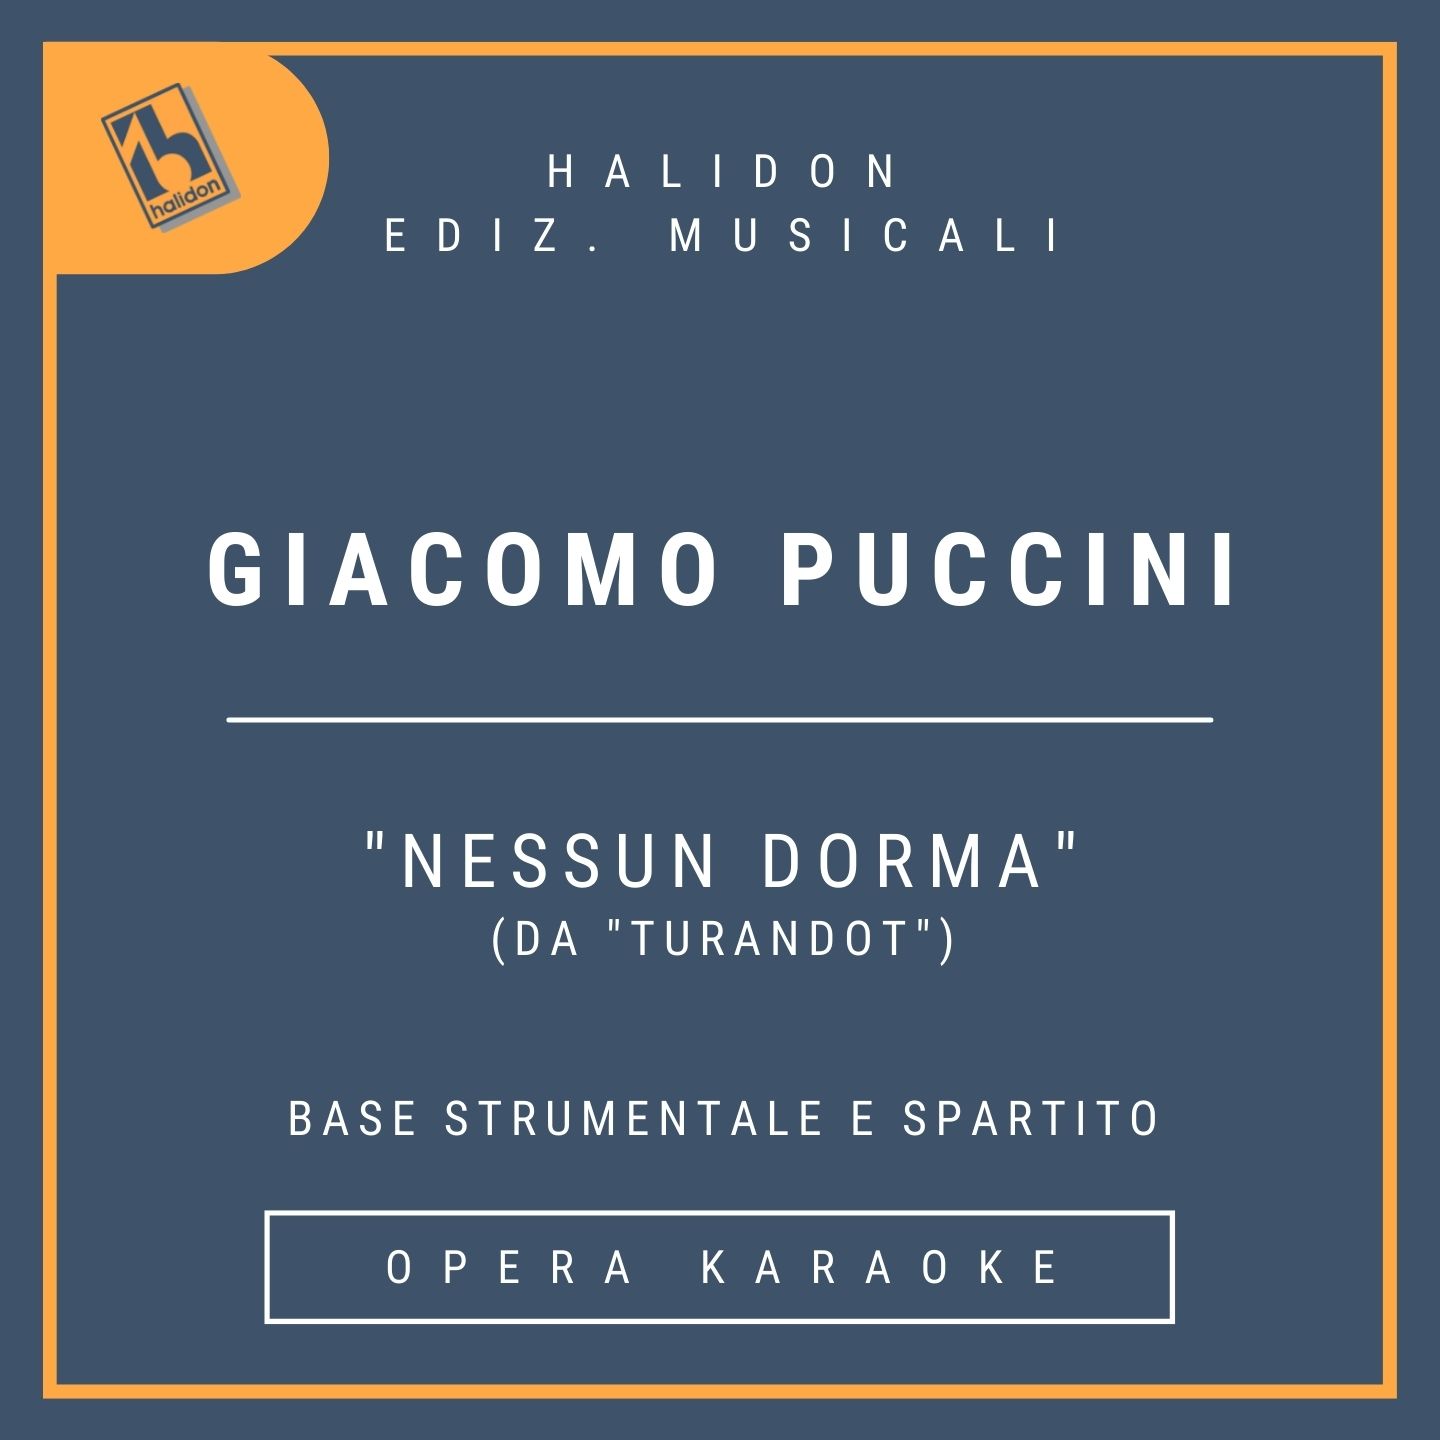 Giacomo Puccini - Nessun dorma (da 'Turandot') - Aria di Calaf (tenore) - Base strumentale + spartito